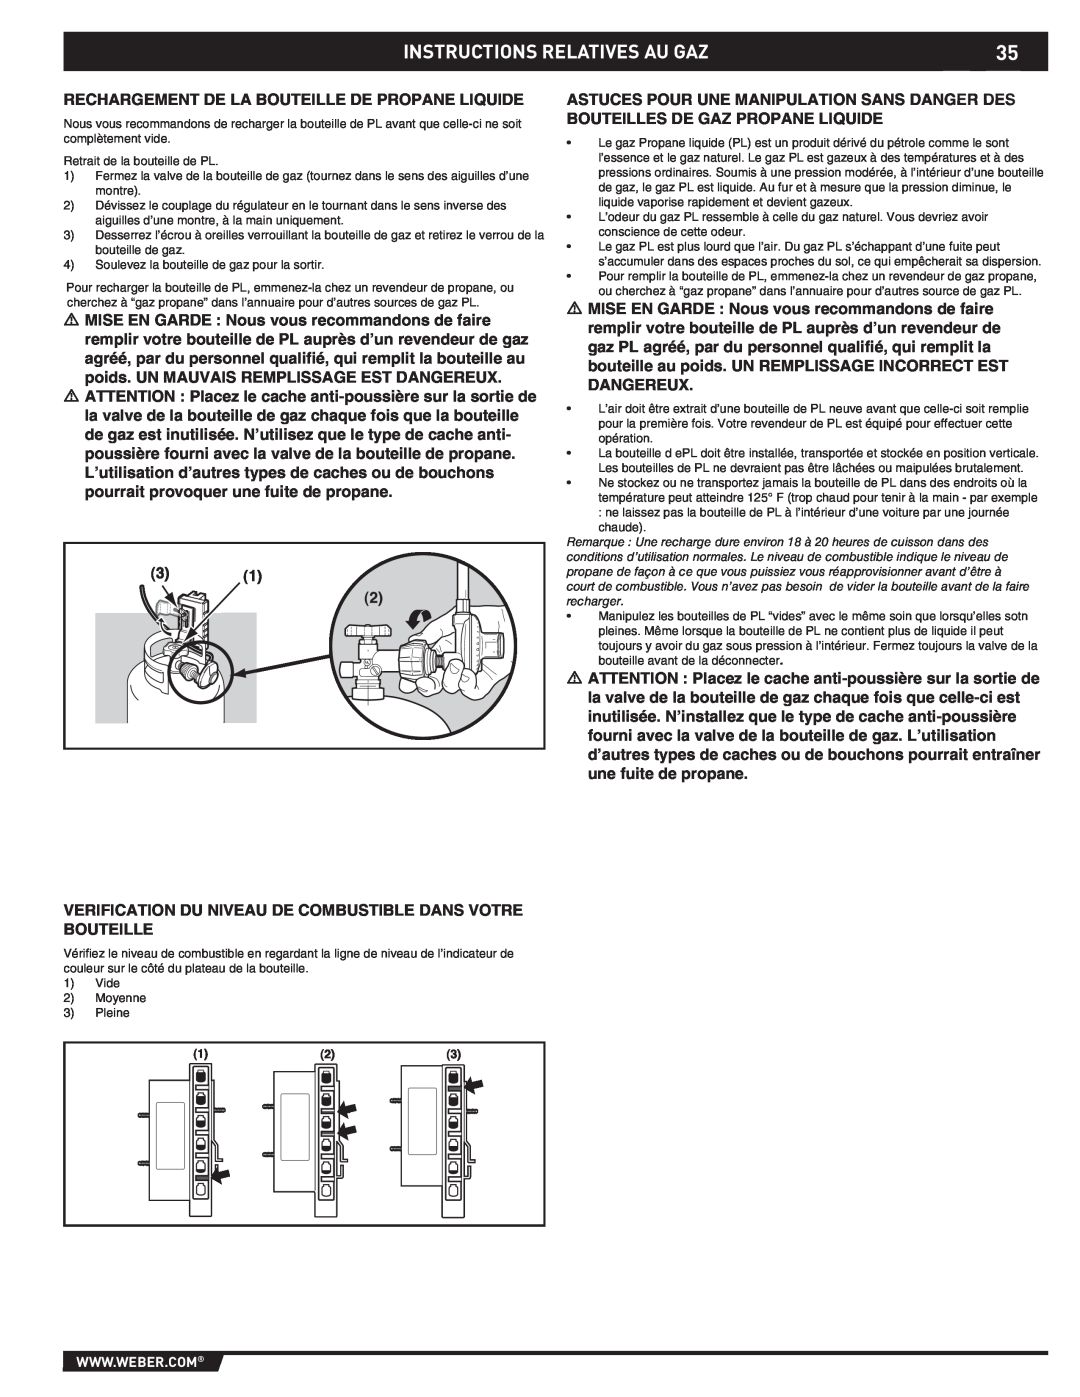 Weber 43176 manual Instructions Relatives Au Gaz, Rechargement De La Bouteille De Propane Liquide 